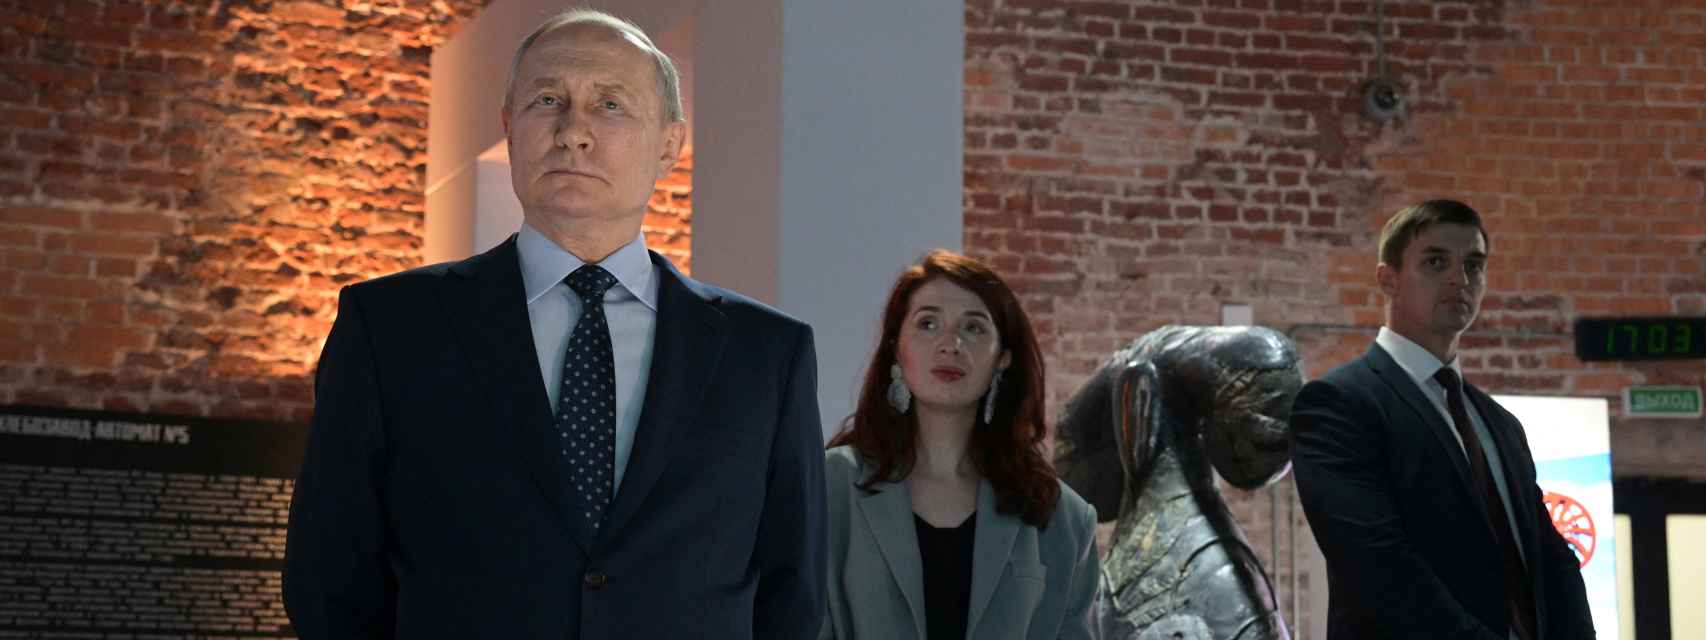 Putin en una exhibición en Moscú.